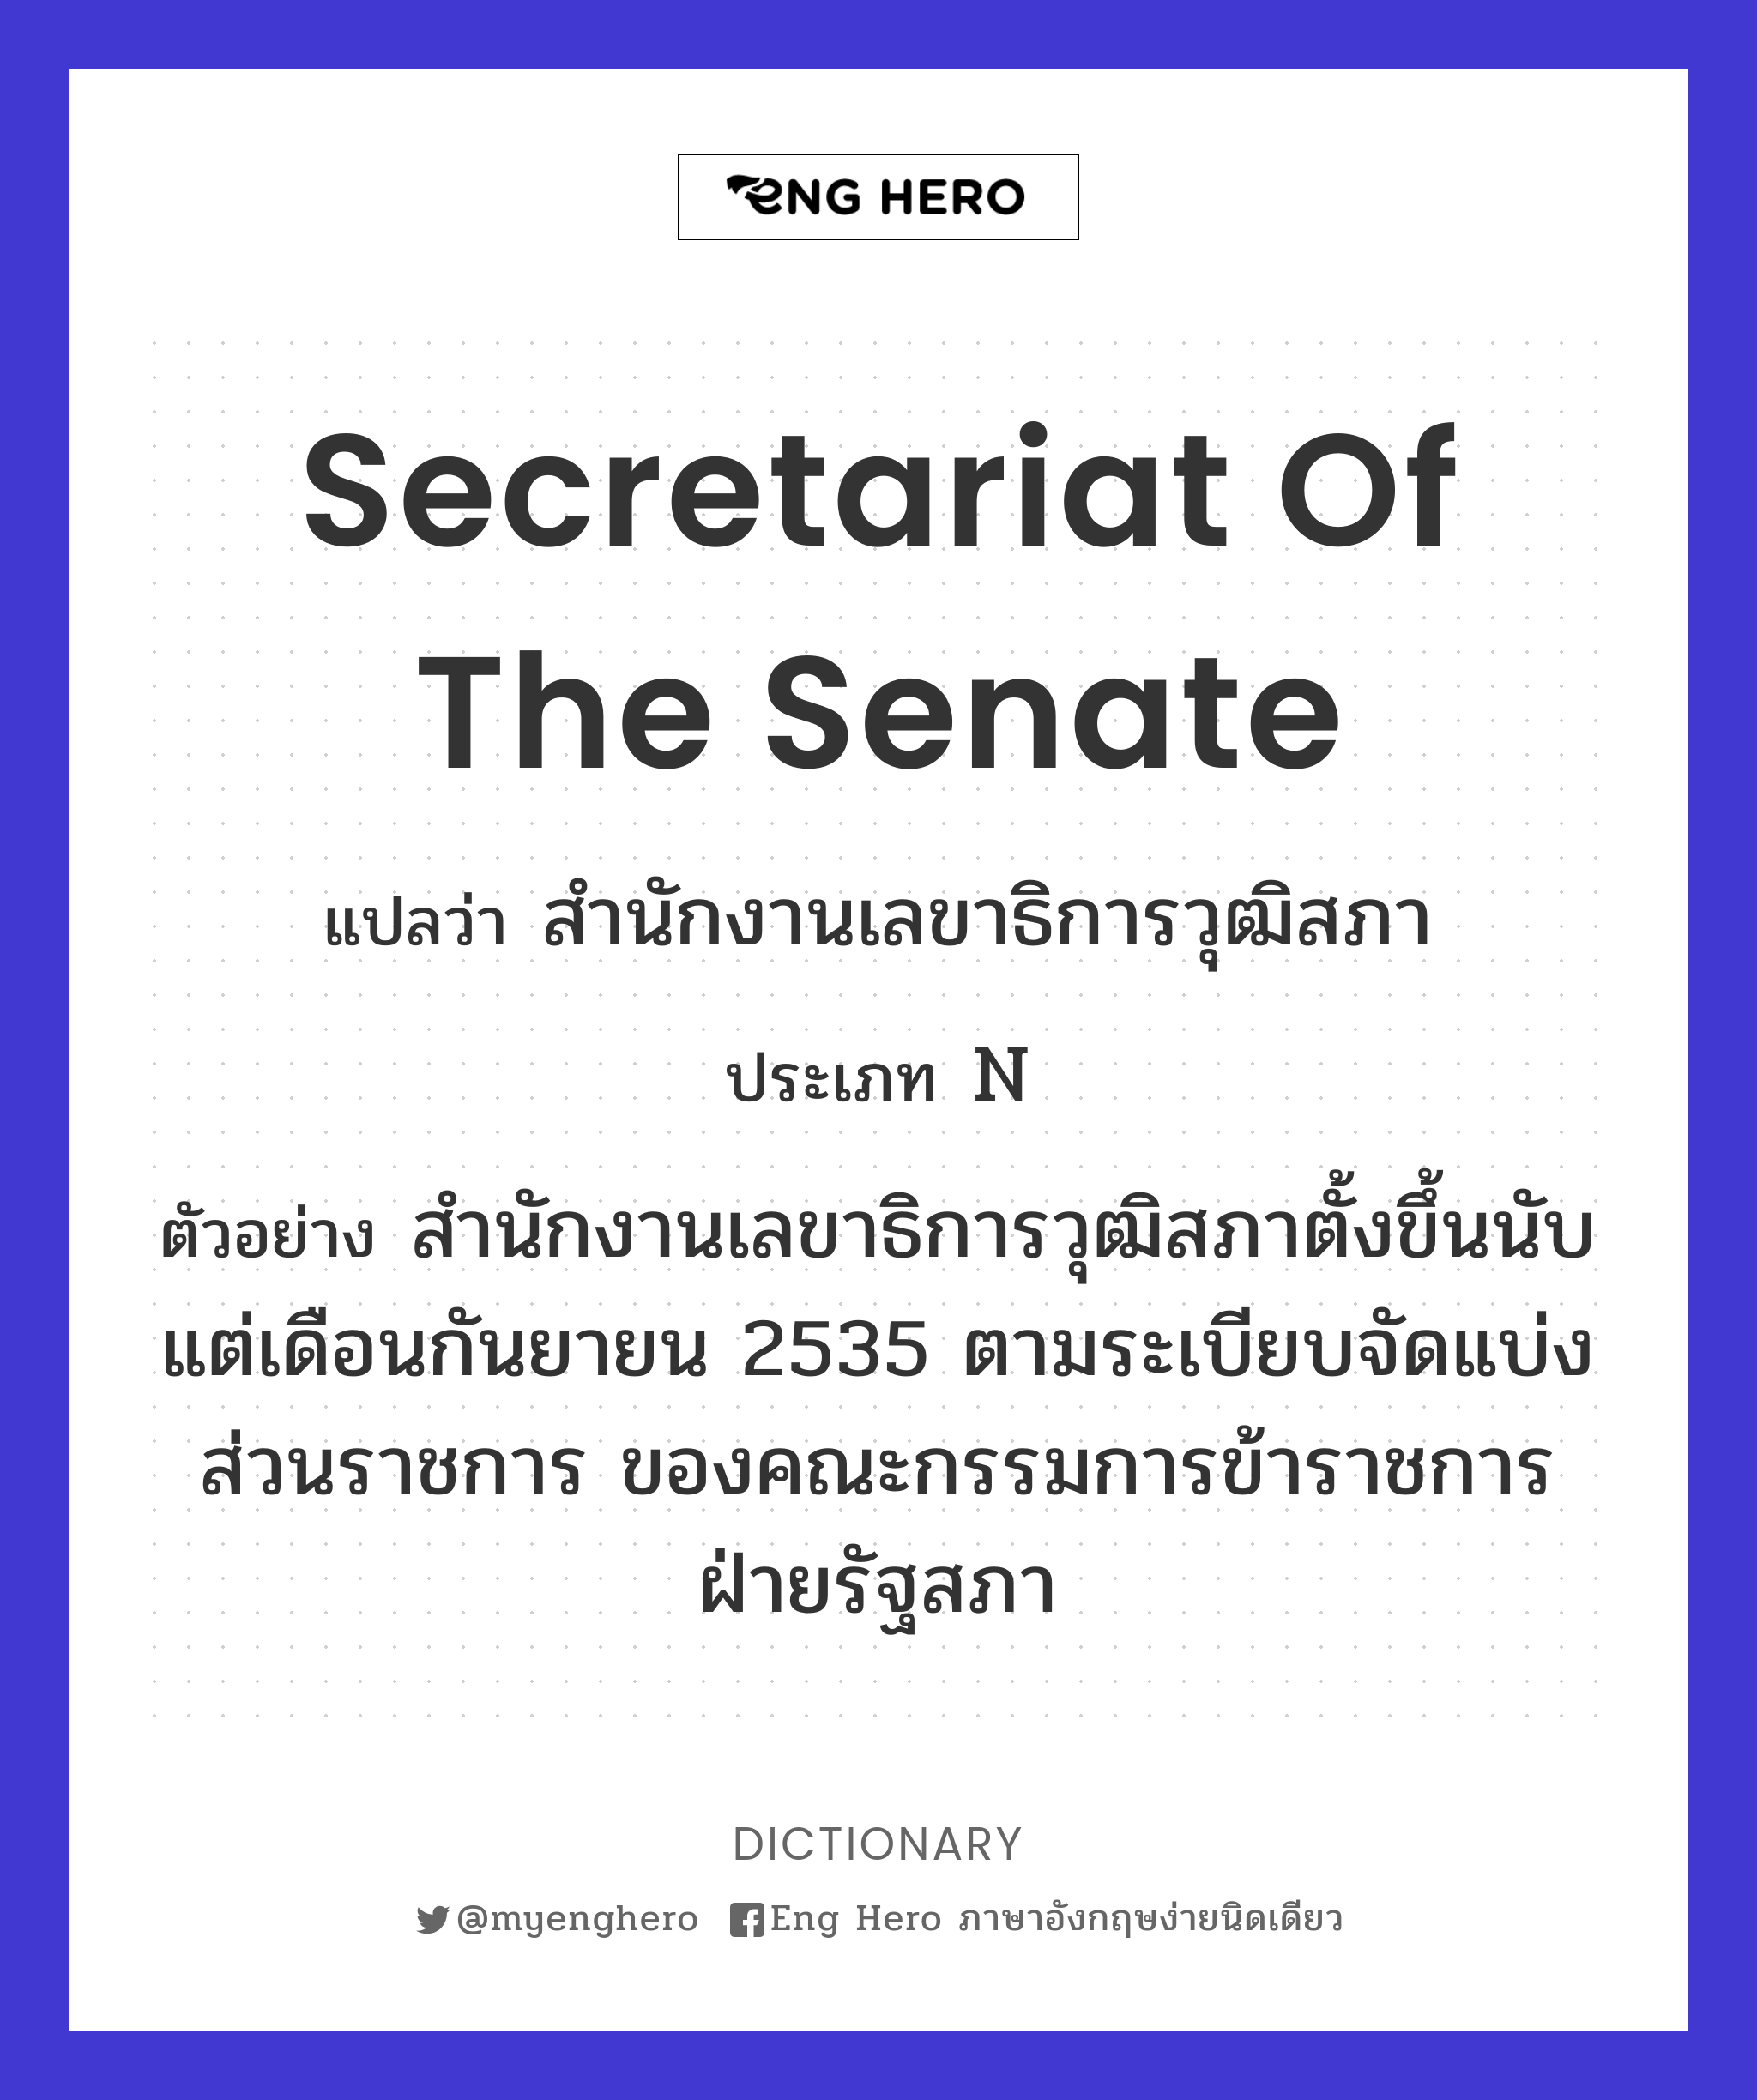 Secretariat of the Senate